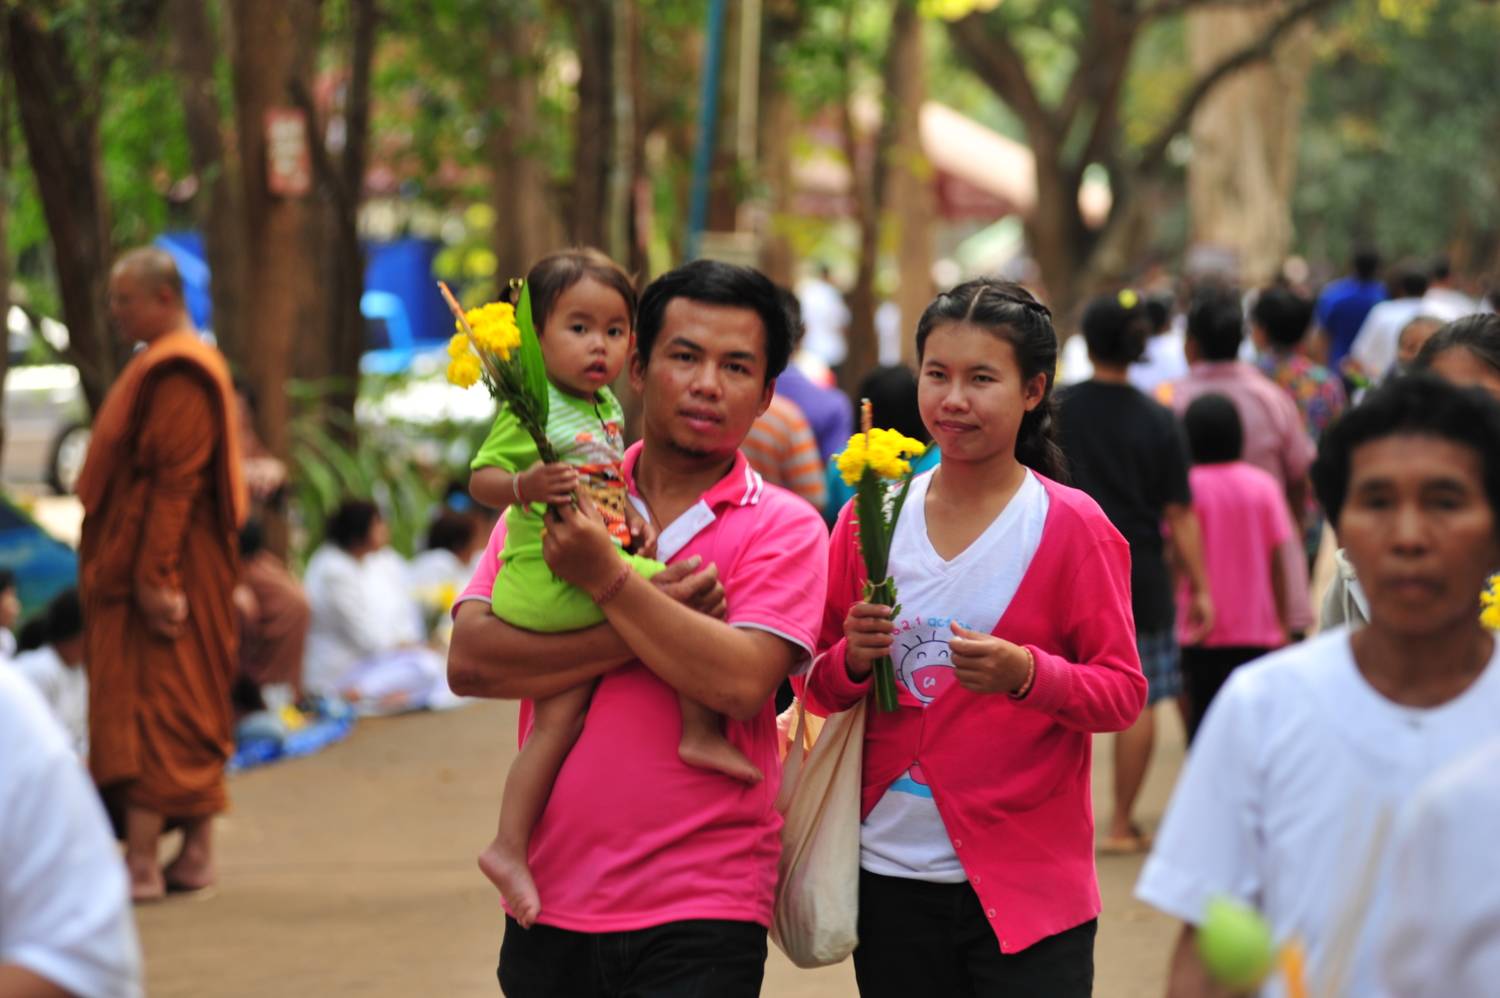 Бангкок за один день: 8 вещей, которые нужно успеть